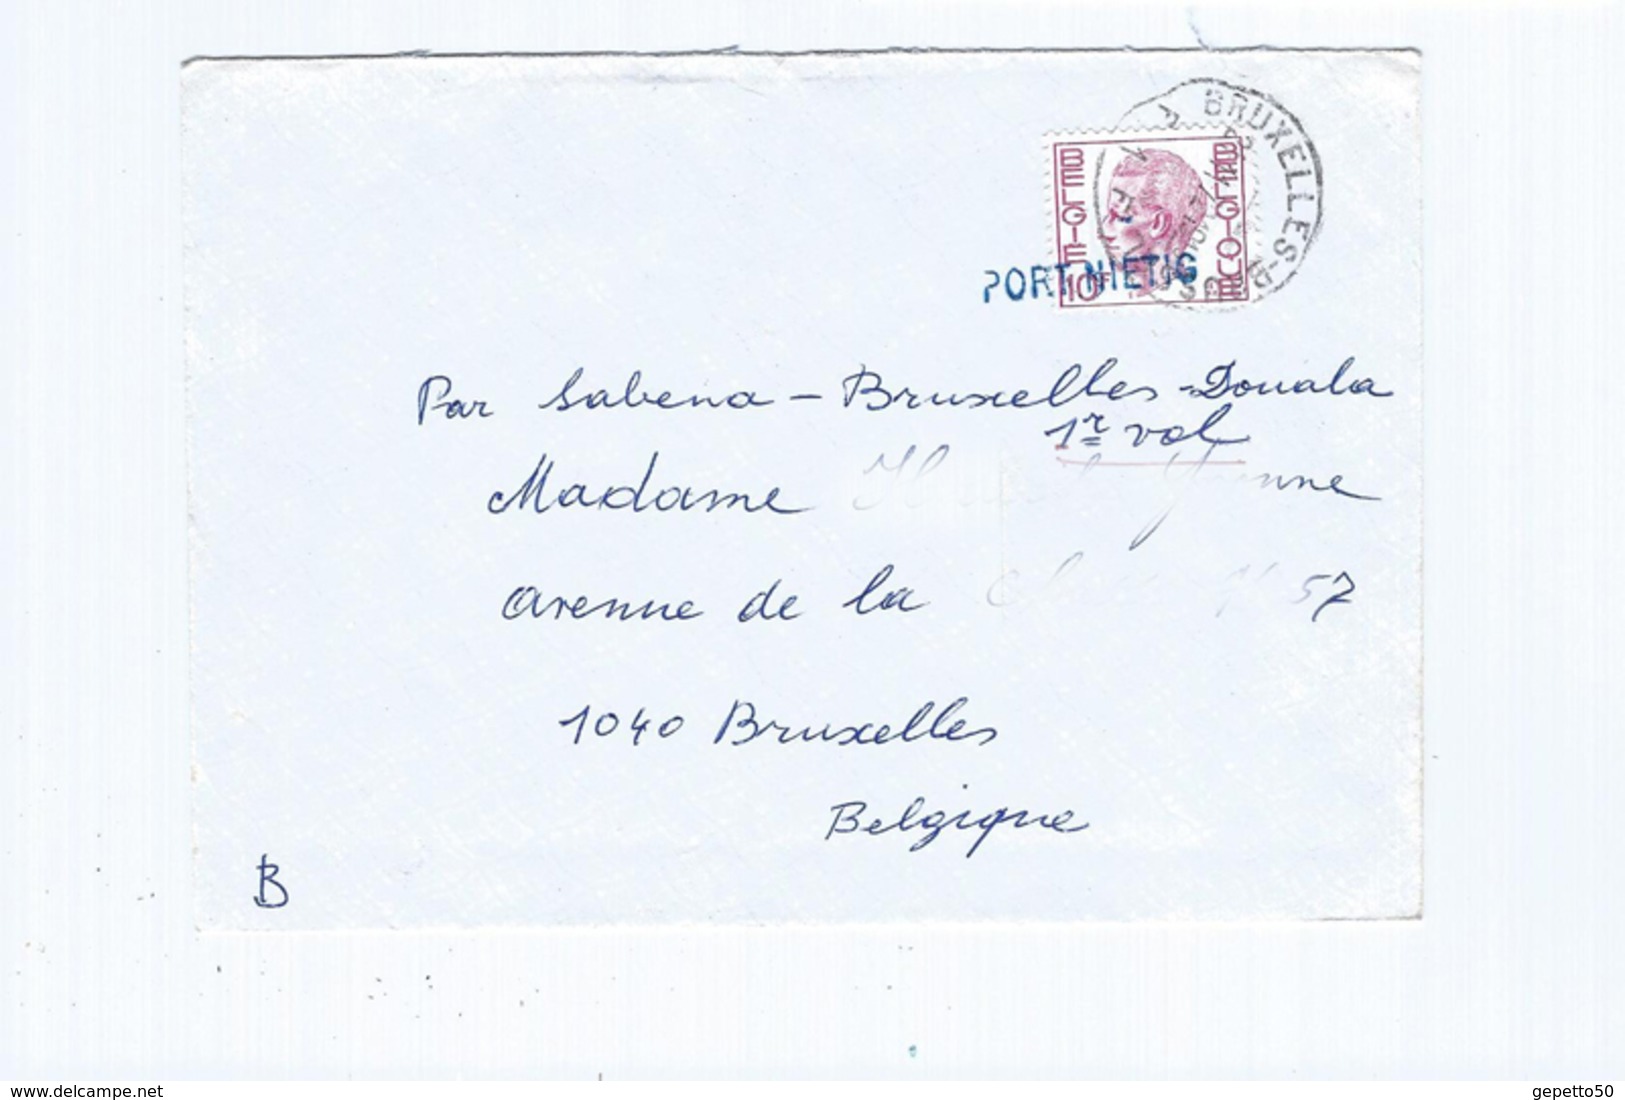 PORT NIETIG Sur Lettre De Bruxelles En 1972 - Linear Postmarks